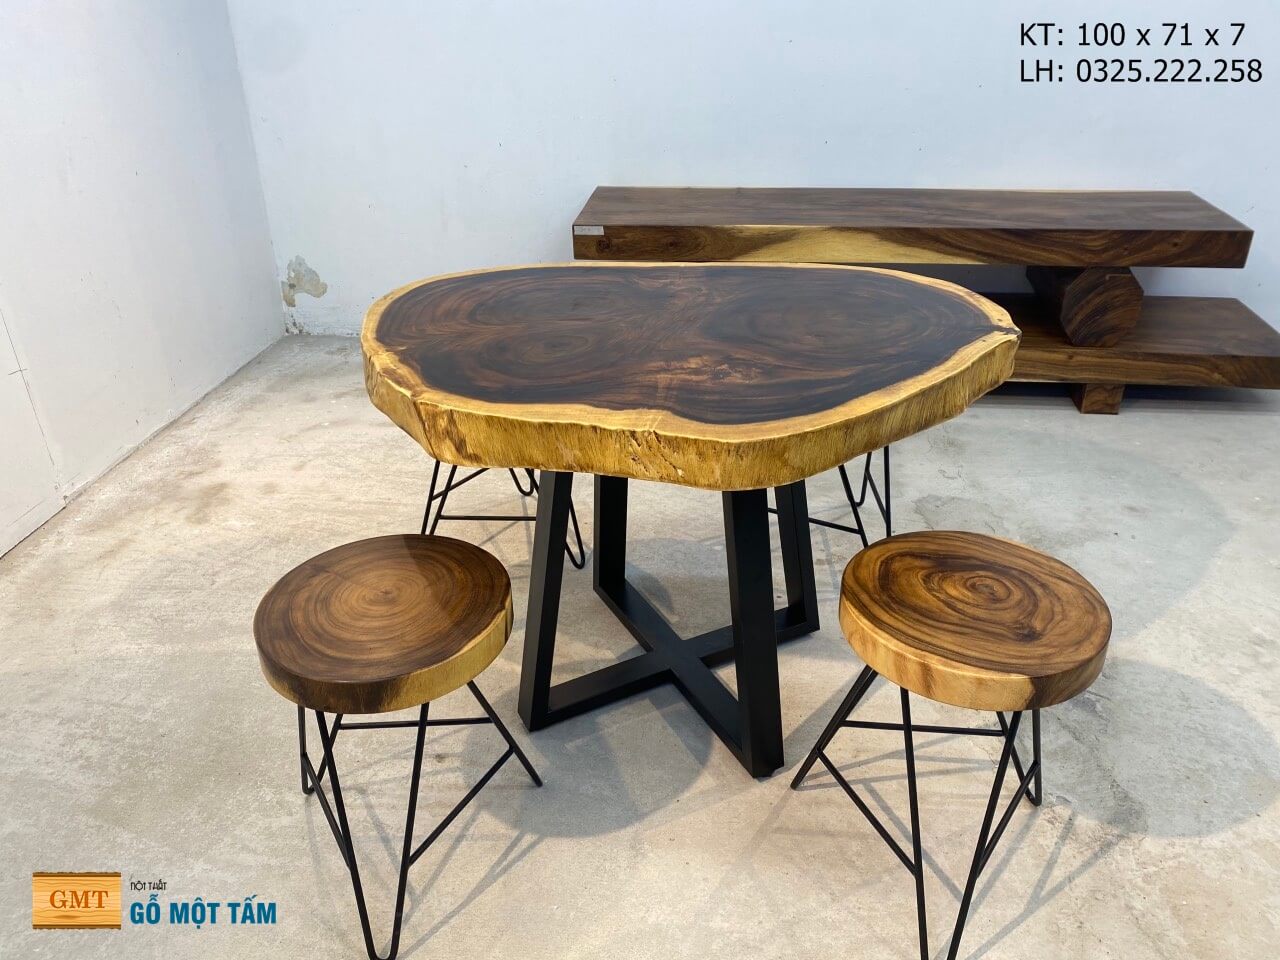 Với bộ bàn ghế gỗ Me Tây, bạn sẽ sở hữu một tác phẩm nghệ thuật đầy cảm hứng để trang trí cho không gian phòng khách của bạn. Bộ bàn ghế được làm từ gỗ tự nhiên, với màu sắc ấm áp và độc đáo.